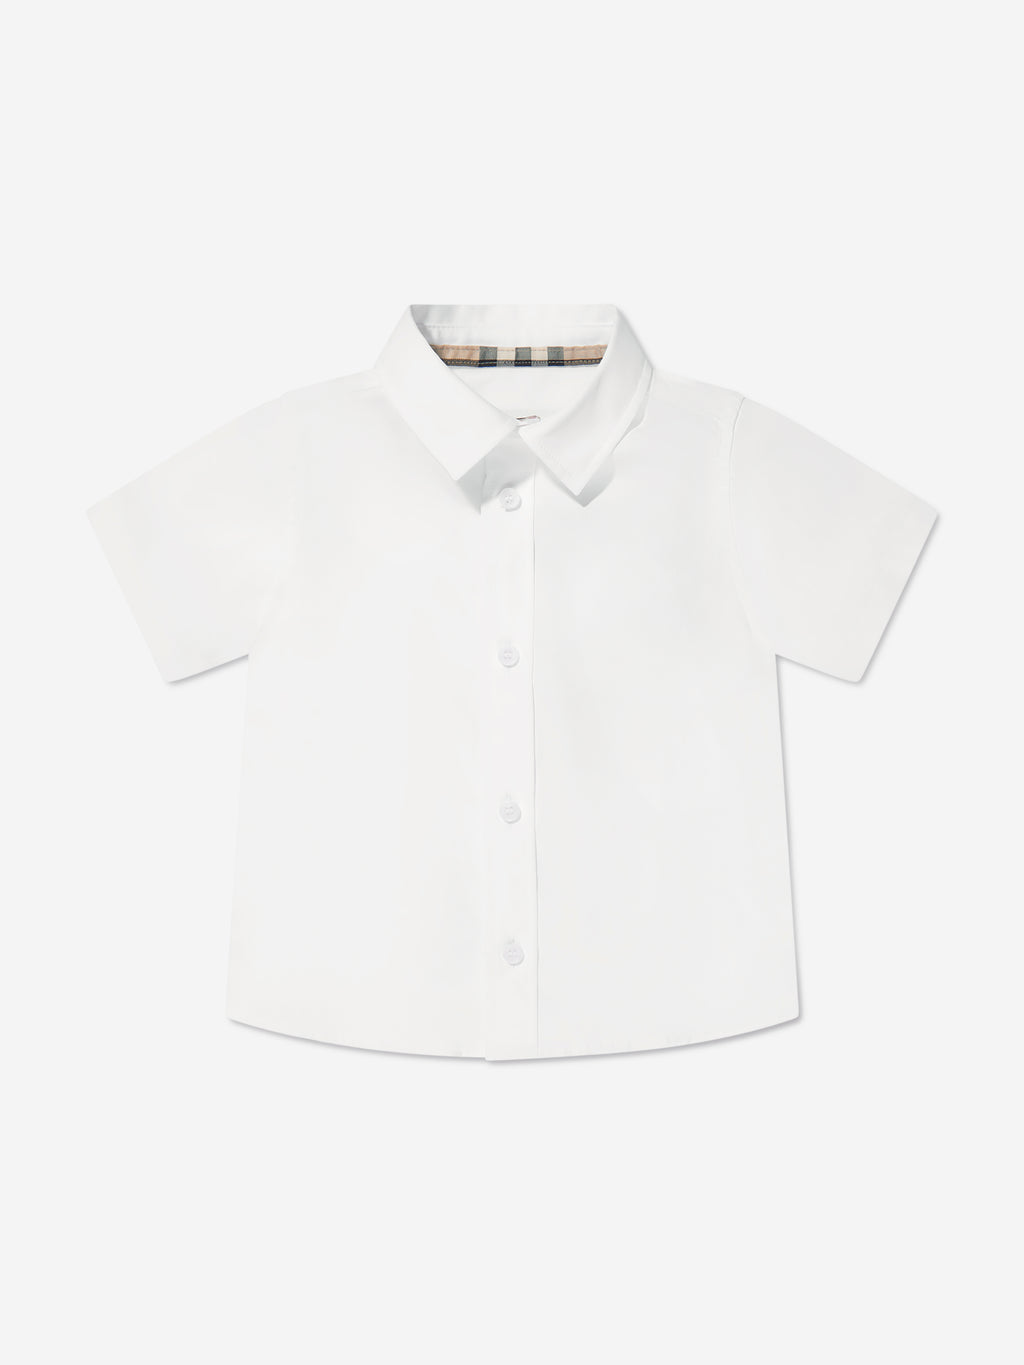 Burberry Kids - Owen Checked Shirt Beige - 18 Months - Beige